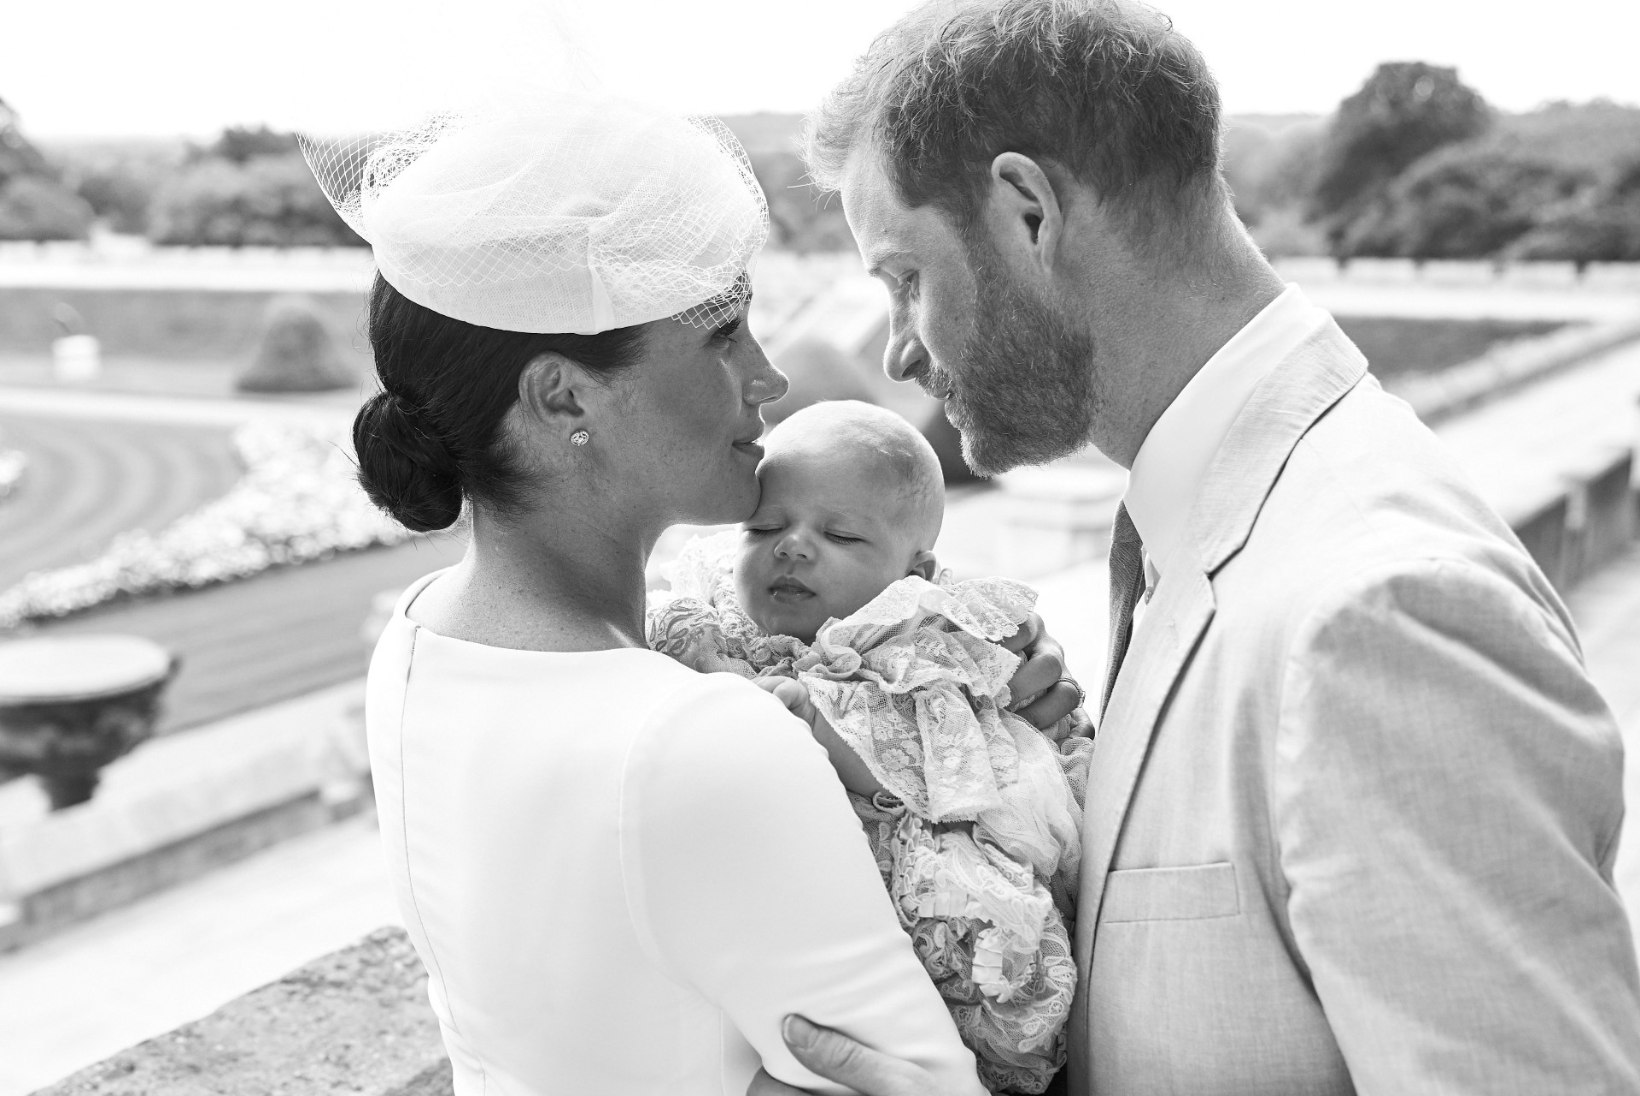 FOTOD | Kuninglik beebi Archie ristiti, ühtlasi tehti austusavaldus printsess Dianale